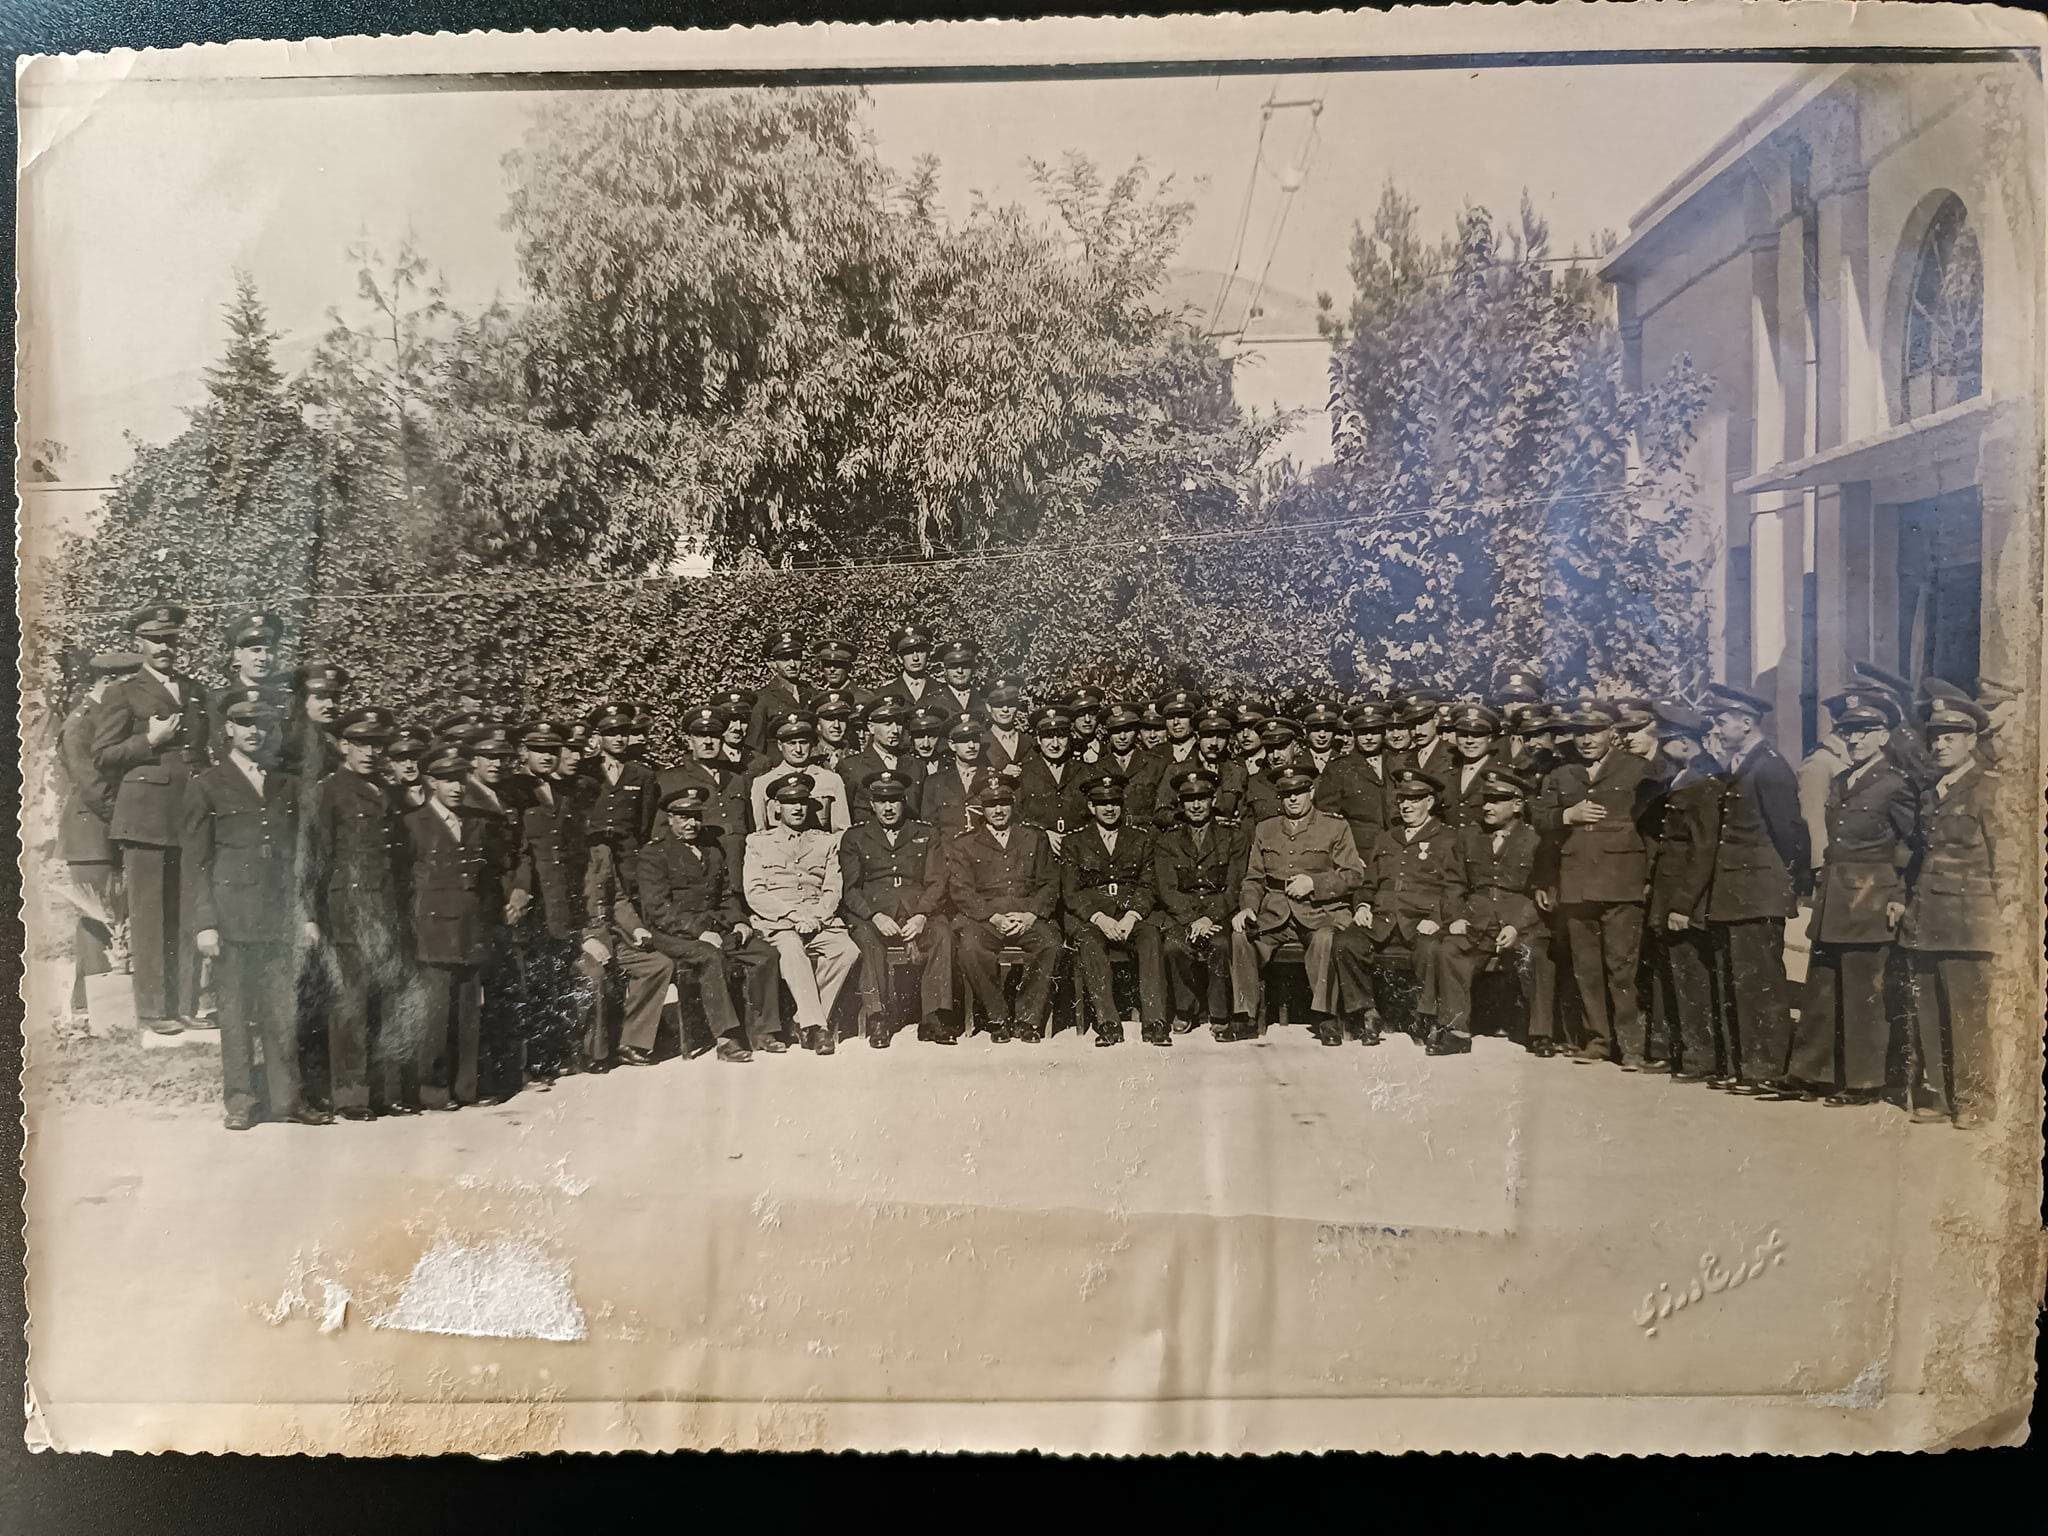 التاريخ السوري المعاصر - مجموعة من ضباط الجيش في الكلية العسكرية بحمص في خمسينيات القرن العشرين